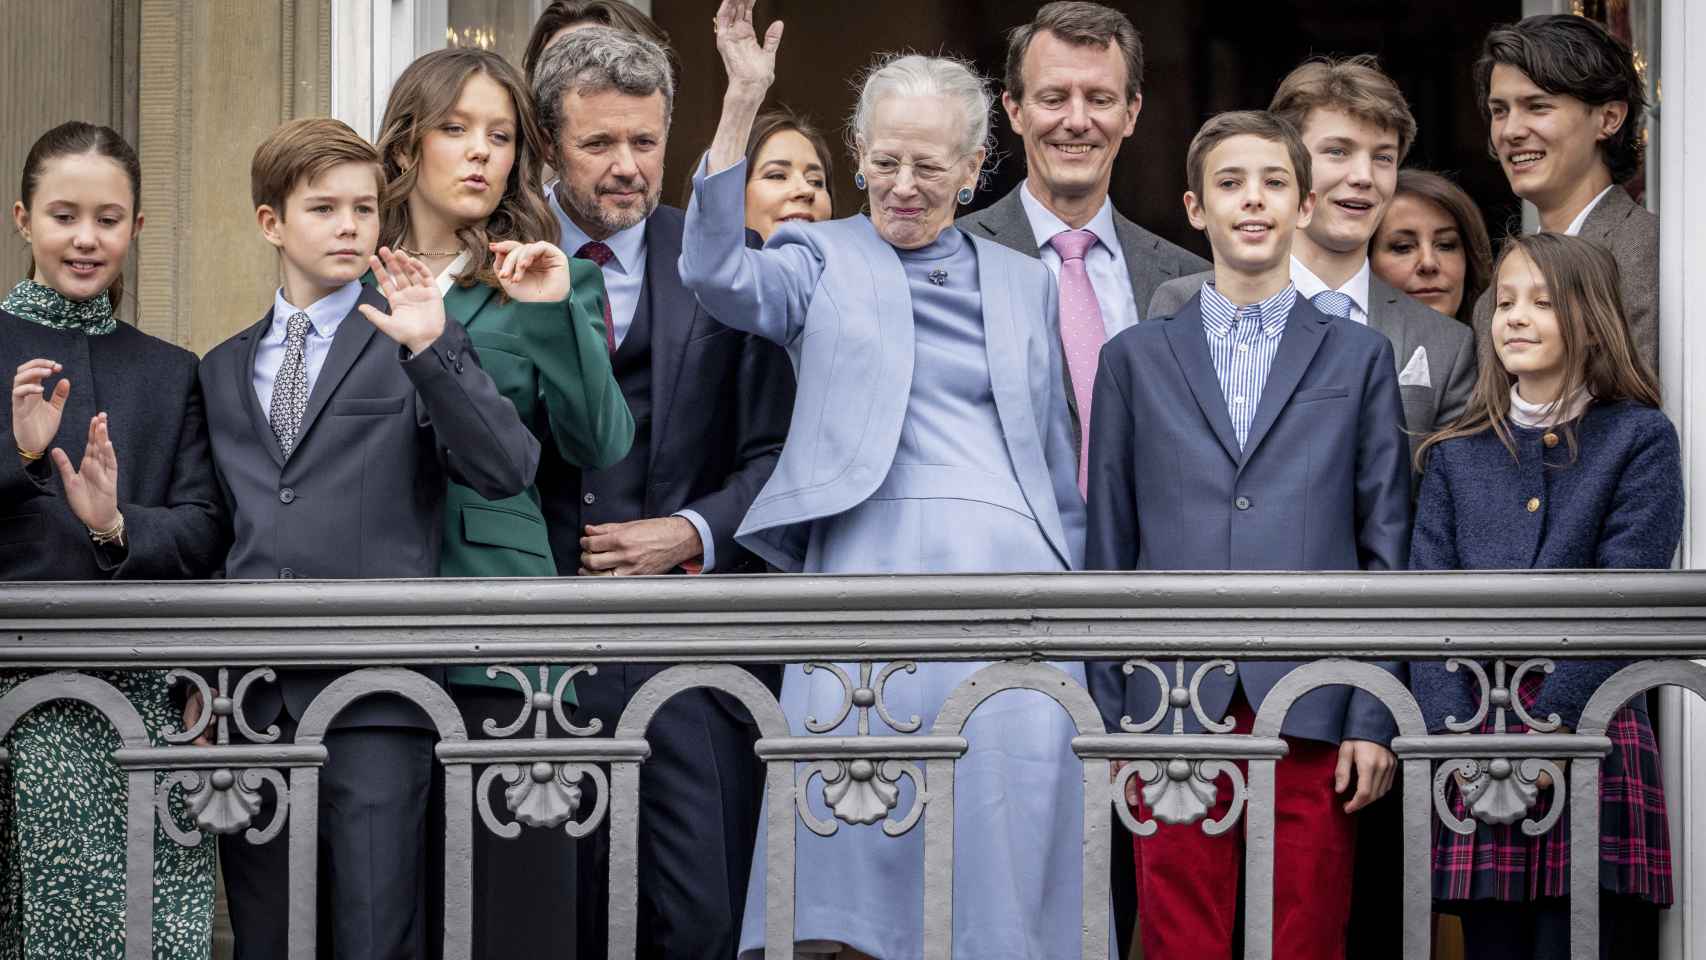 A las doce de la mañana de este domingo, la Reina y toda su familia al completo se han asomado al balcón para saludar.